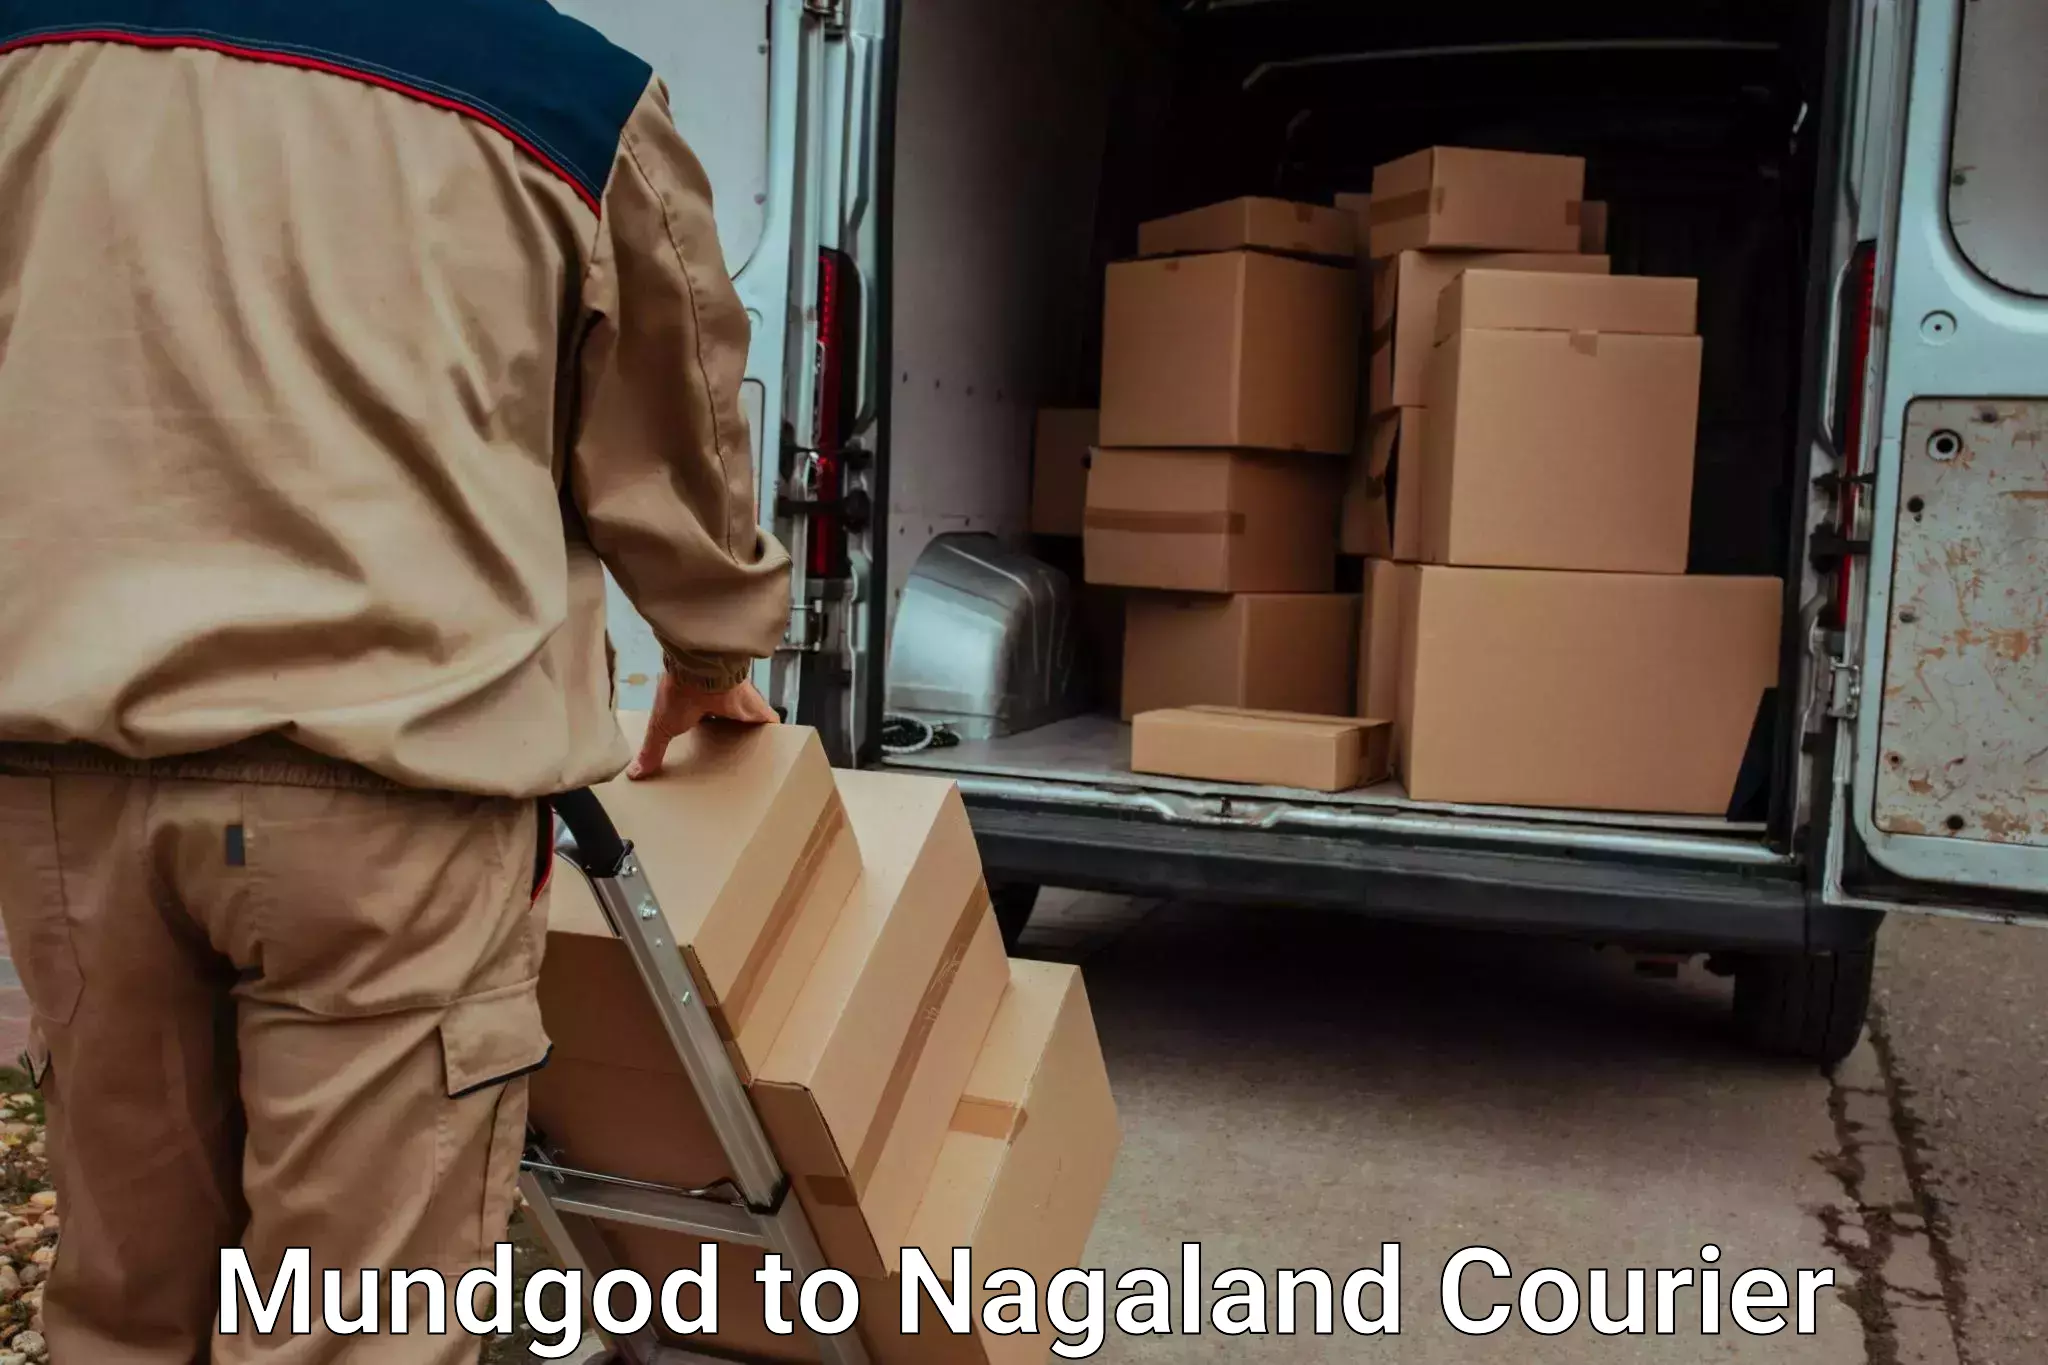 Hassle-free luggage shipping in Mundgod to Nagaland